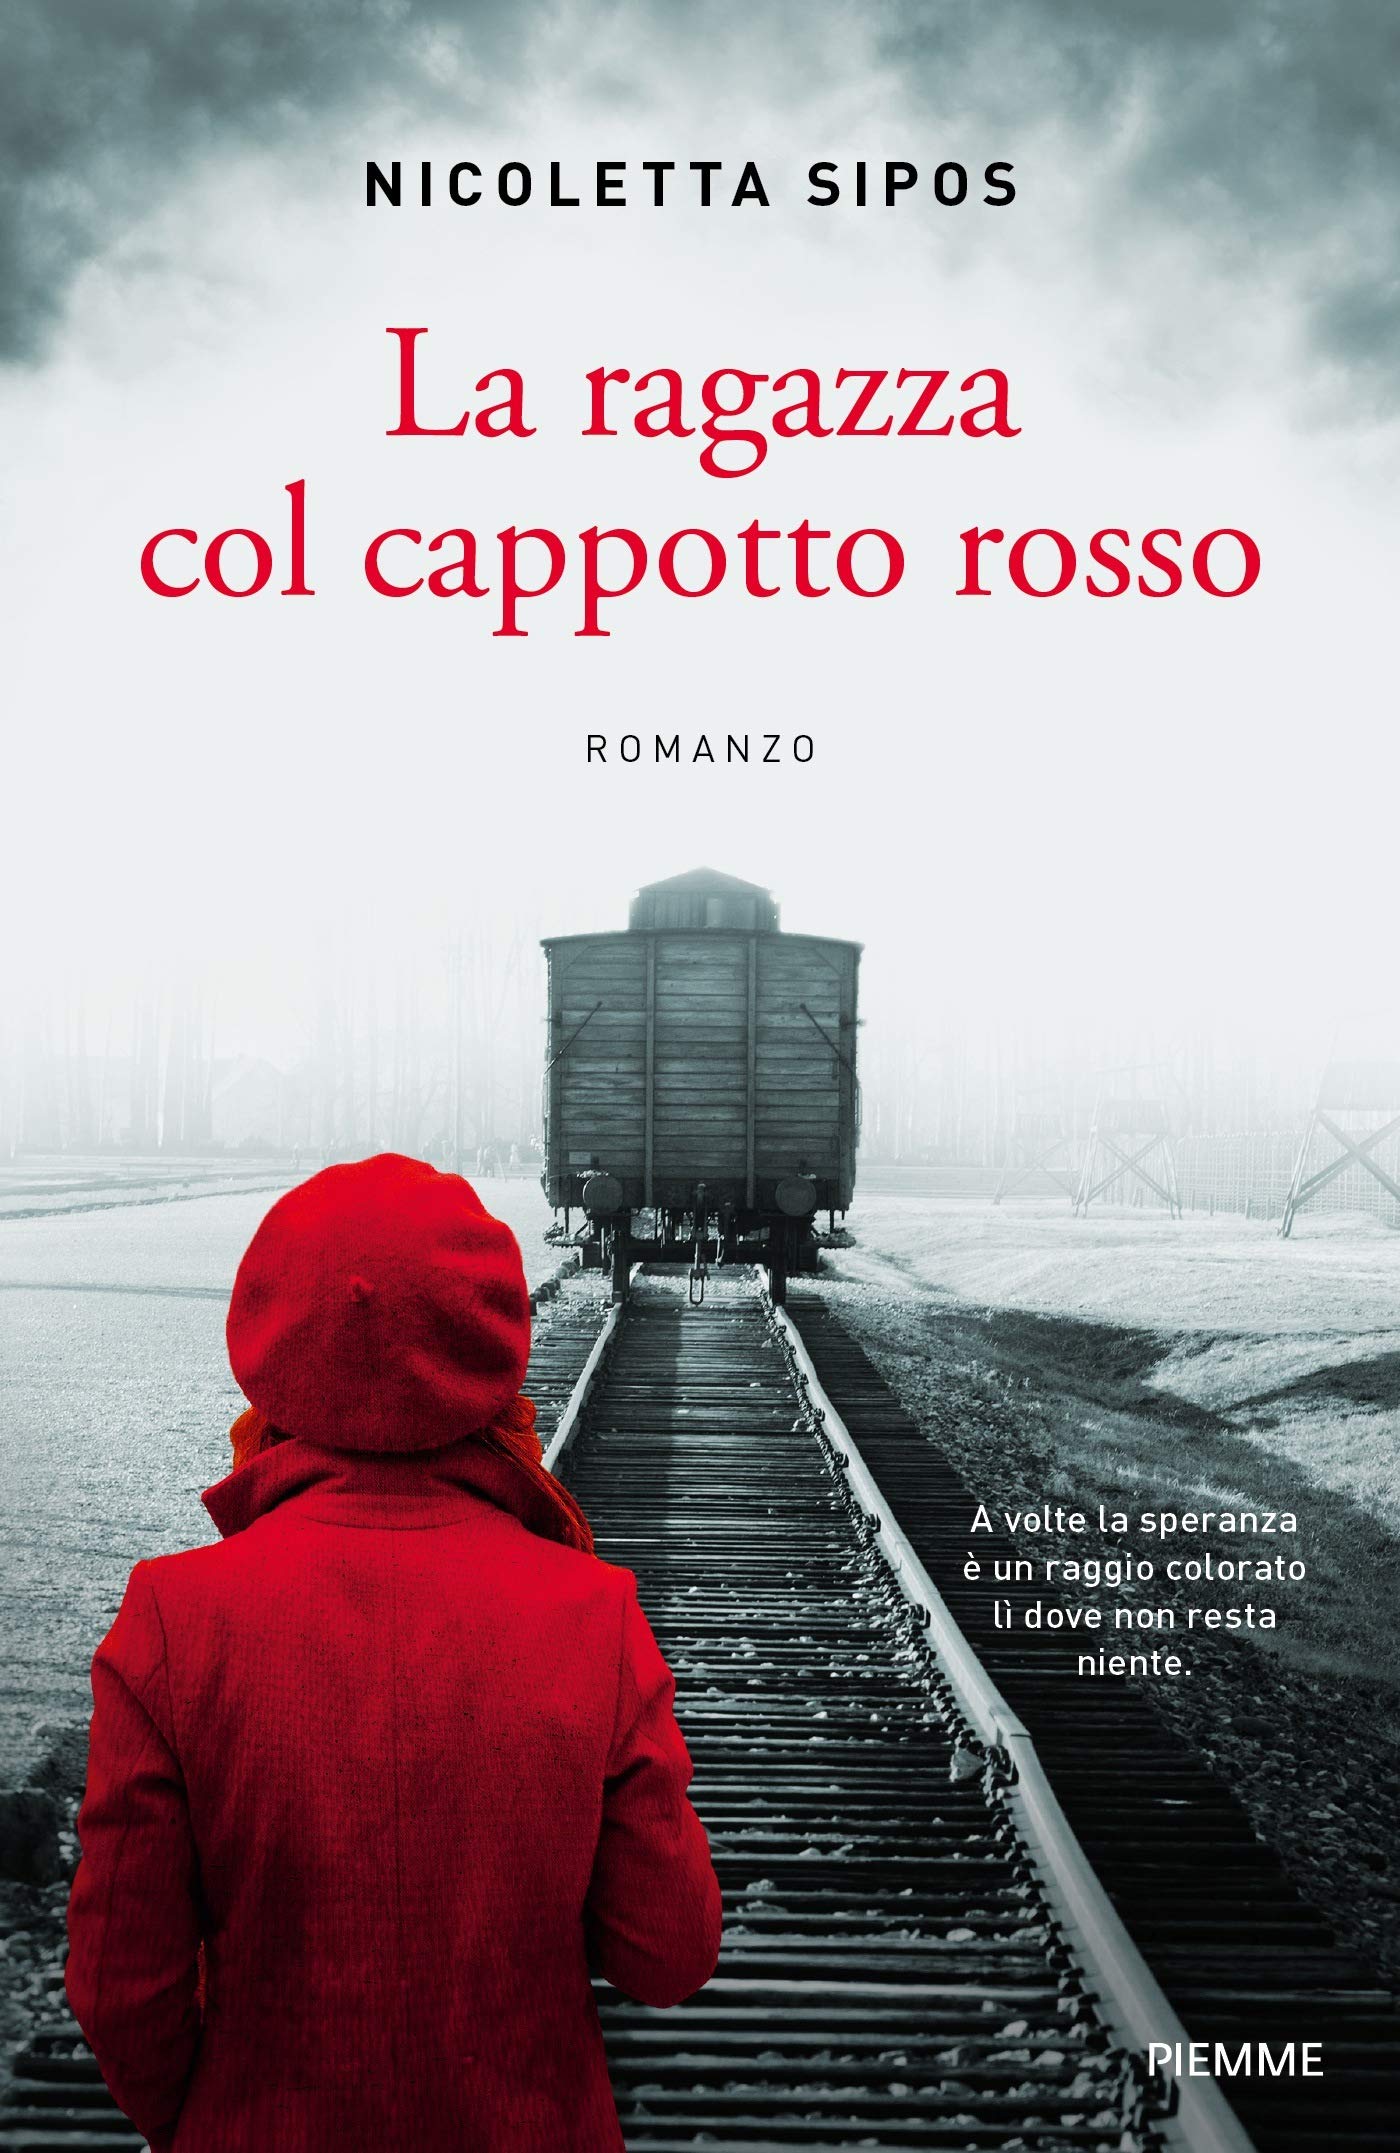 Distopie del Passato: “La ragazza col cappotto rosso” di Nicoletta Sipos